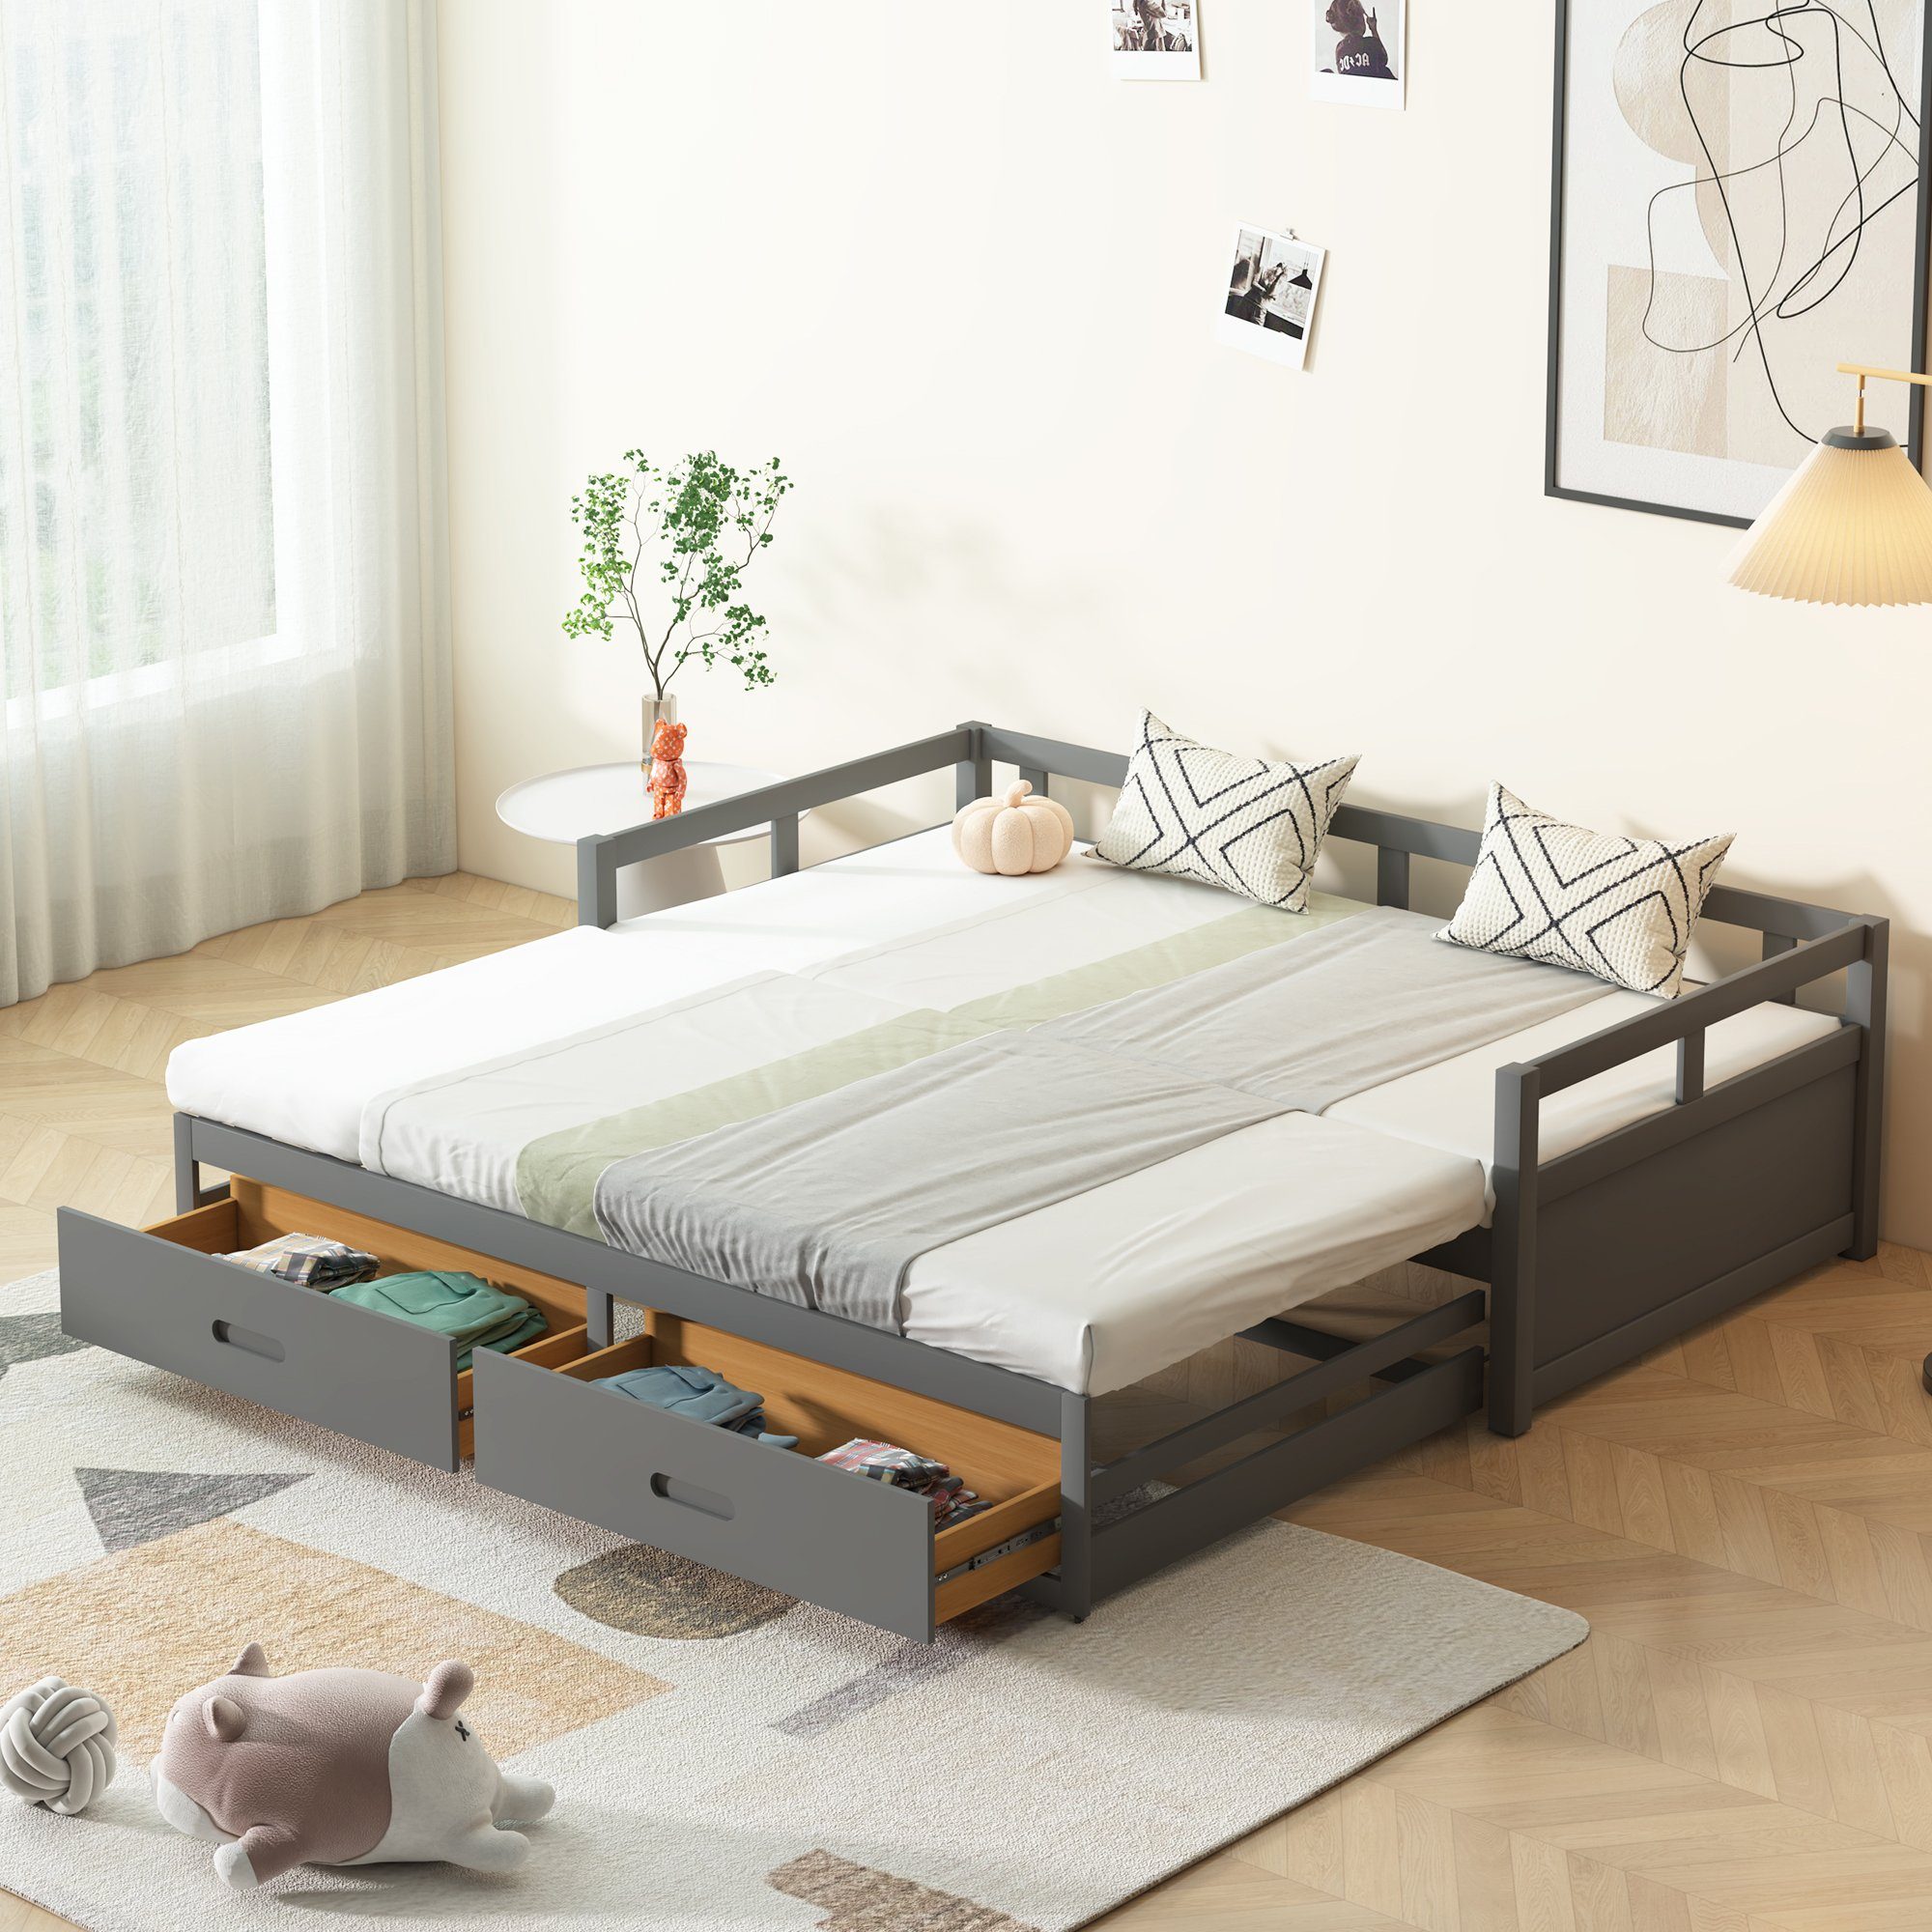 SOFTWEARY Schlafsofa Ausziehbett mit Bettfunktion, inkl. Lattenrost und Schubladen, 90x200 cm/180x200 cm, Holzbett aus Kiefer grau